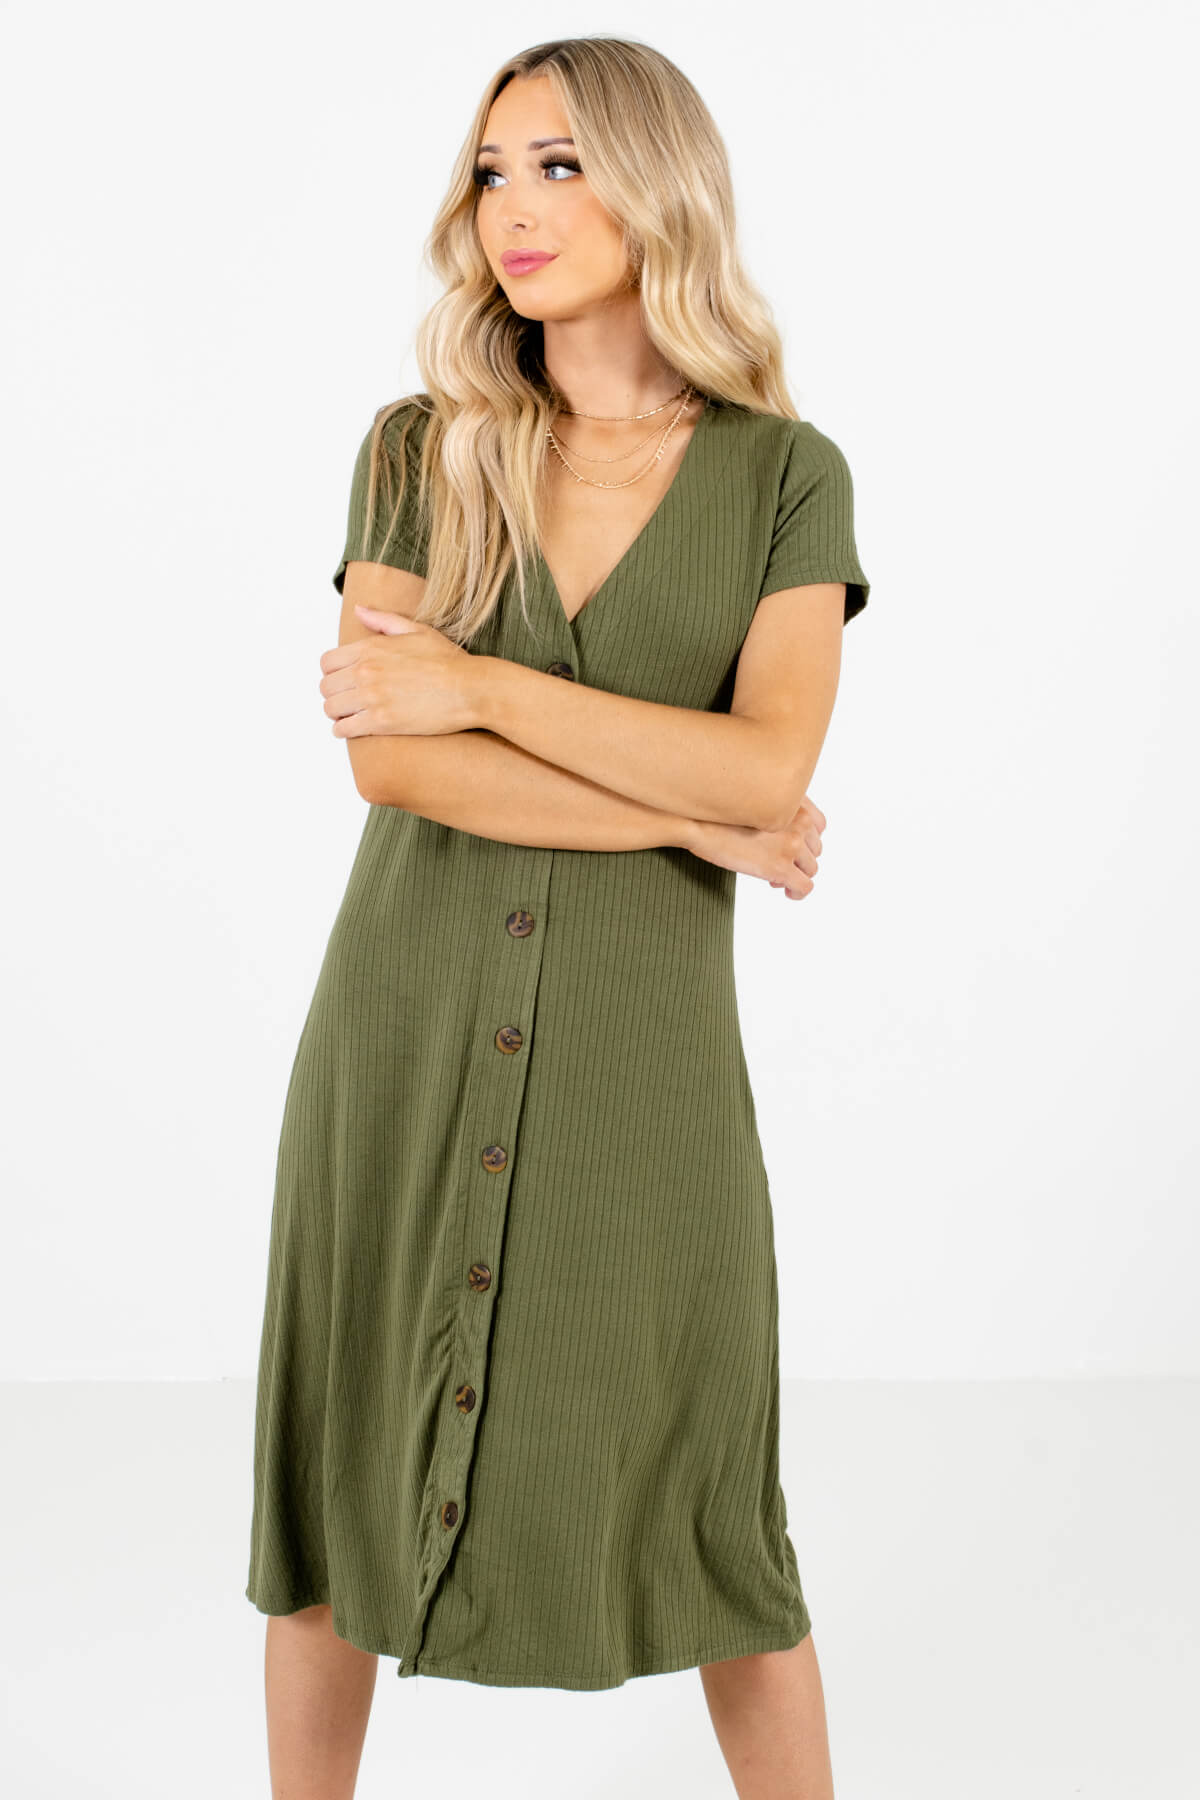 One in a Million Olive Green Midi Dress | Boutique Dresses - Bella Ella ...